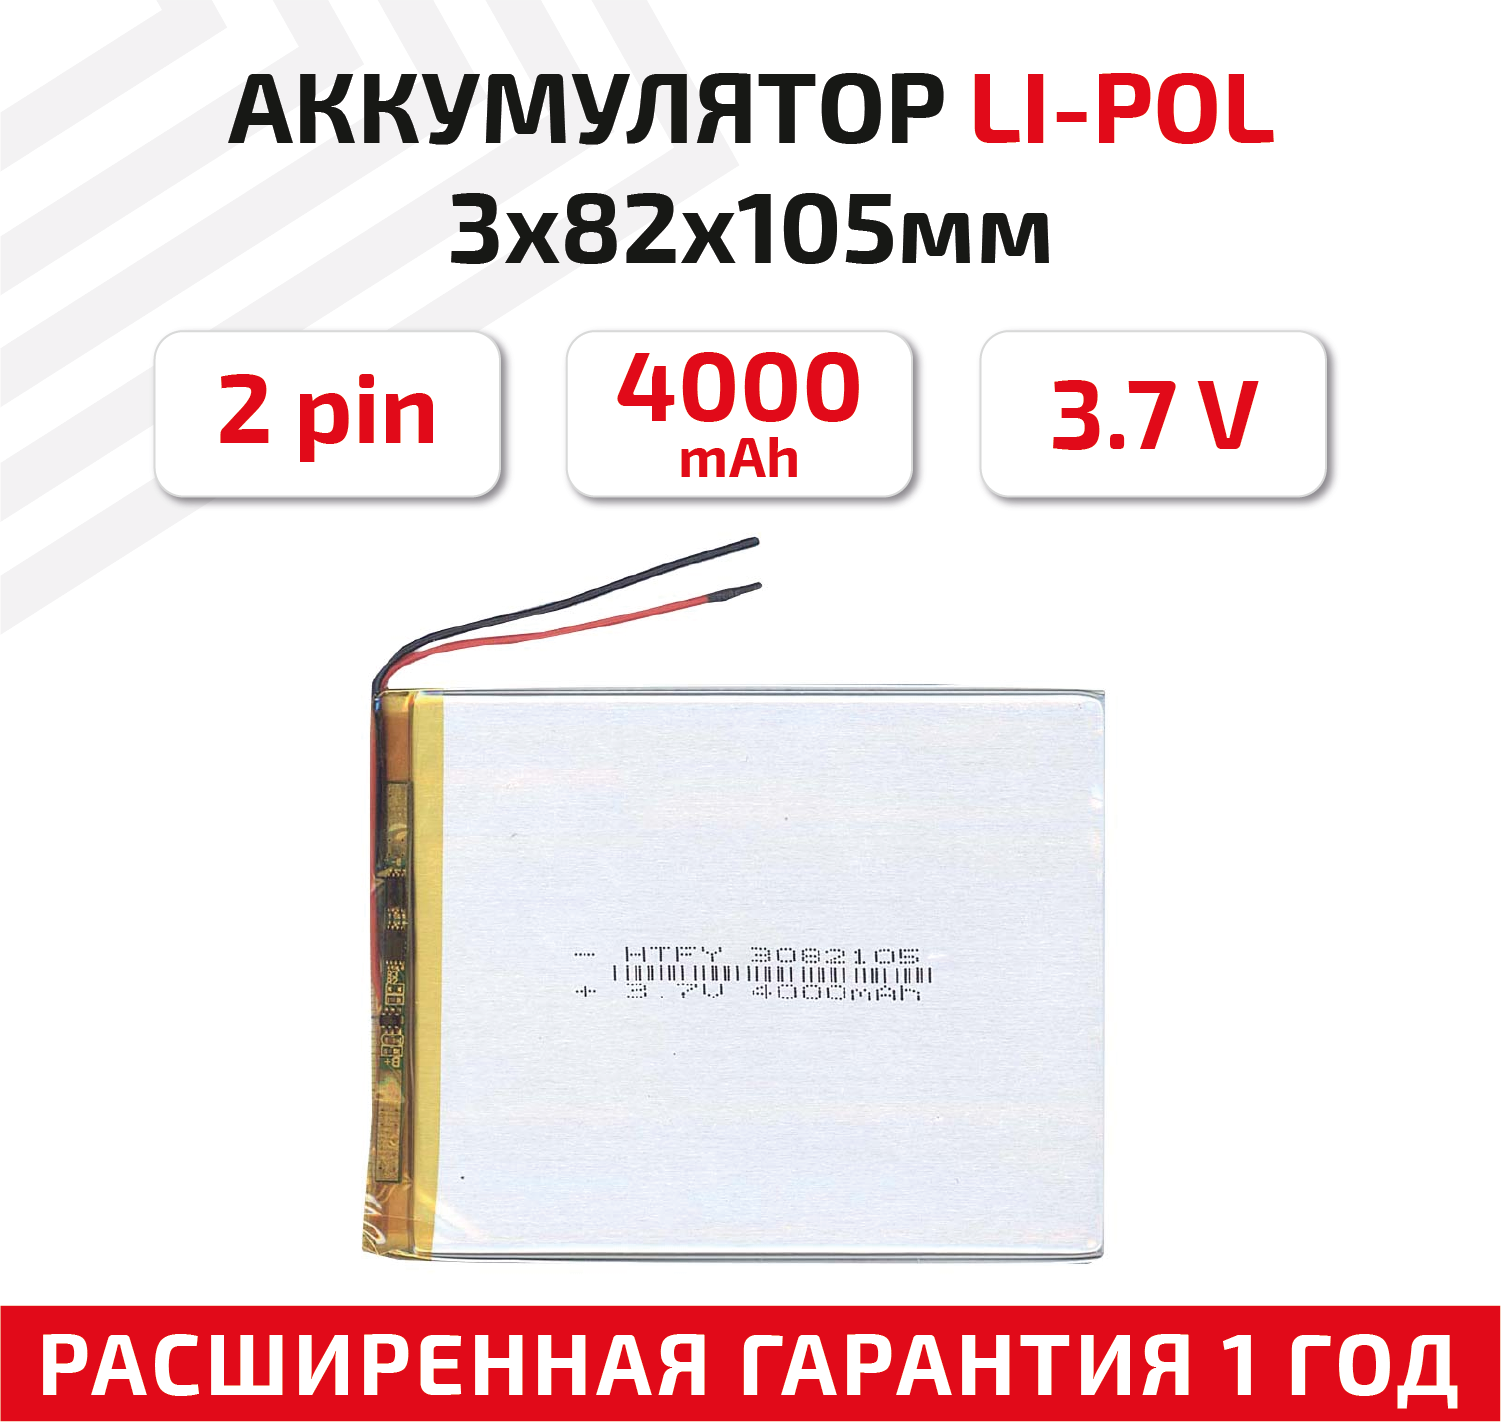 Универсальный аккумулятор (АКБ) для планшета, видеорегистратора и др, 3х82х105мм, 4000мАч, 3.7В, Li-Pol, 2pin (на 2 провода)